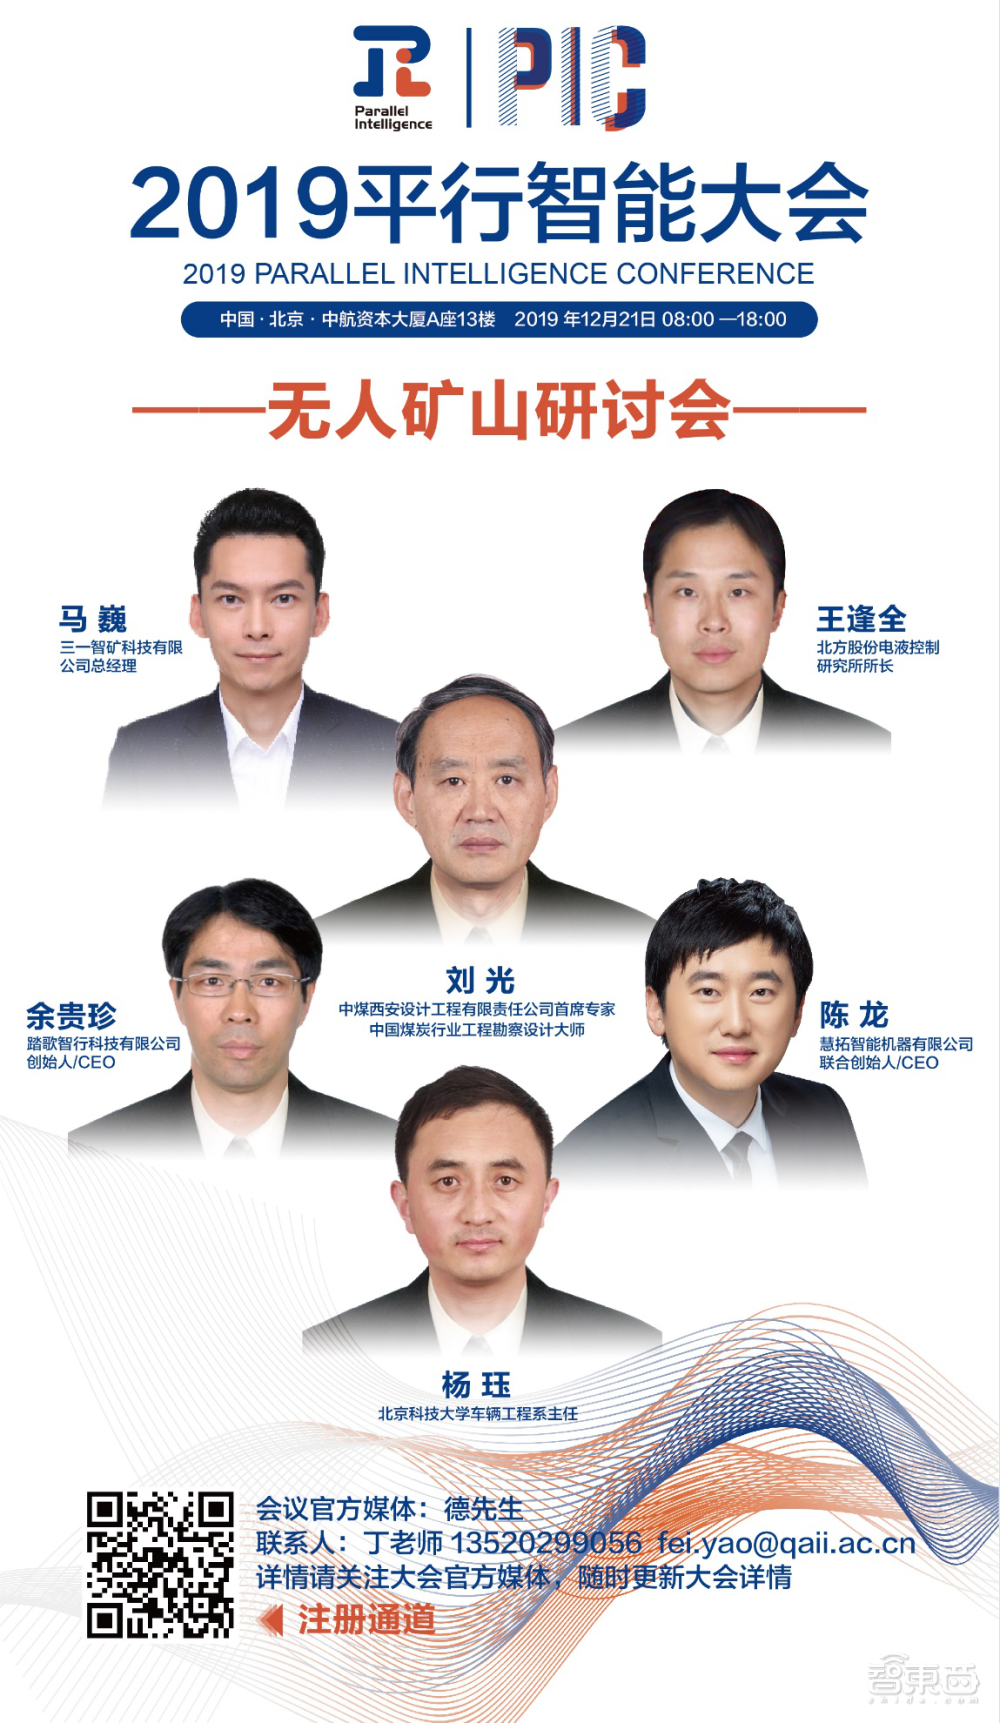 2019平行智能大会将于12月21日在北京召开